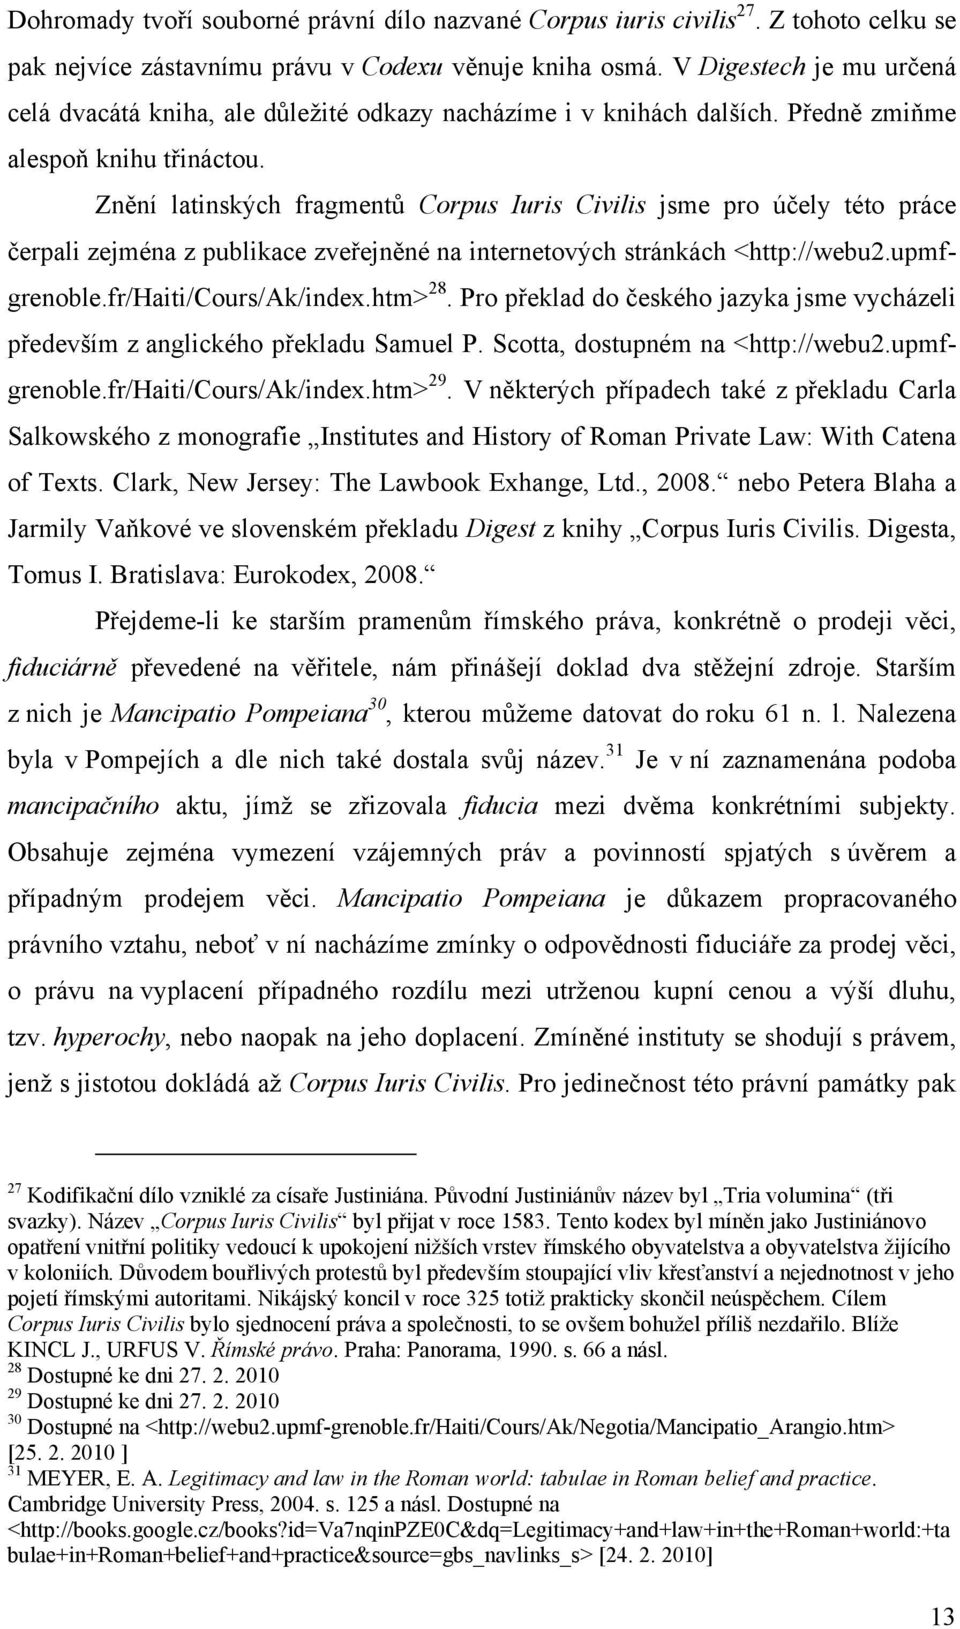 Znění latinských fragmentů Corpus Iuris Civilis jsme pro účely této práce čerpali zejména z publikace zveřejněné na internetových stránkách <http://webu2.upmfgrenoble.fr/haiti/cours/ak/index.htm> 28.